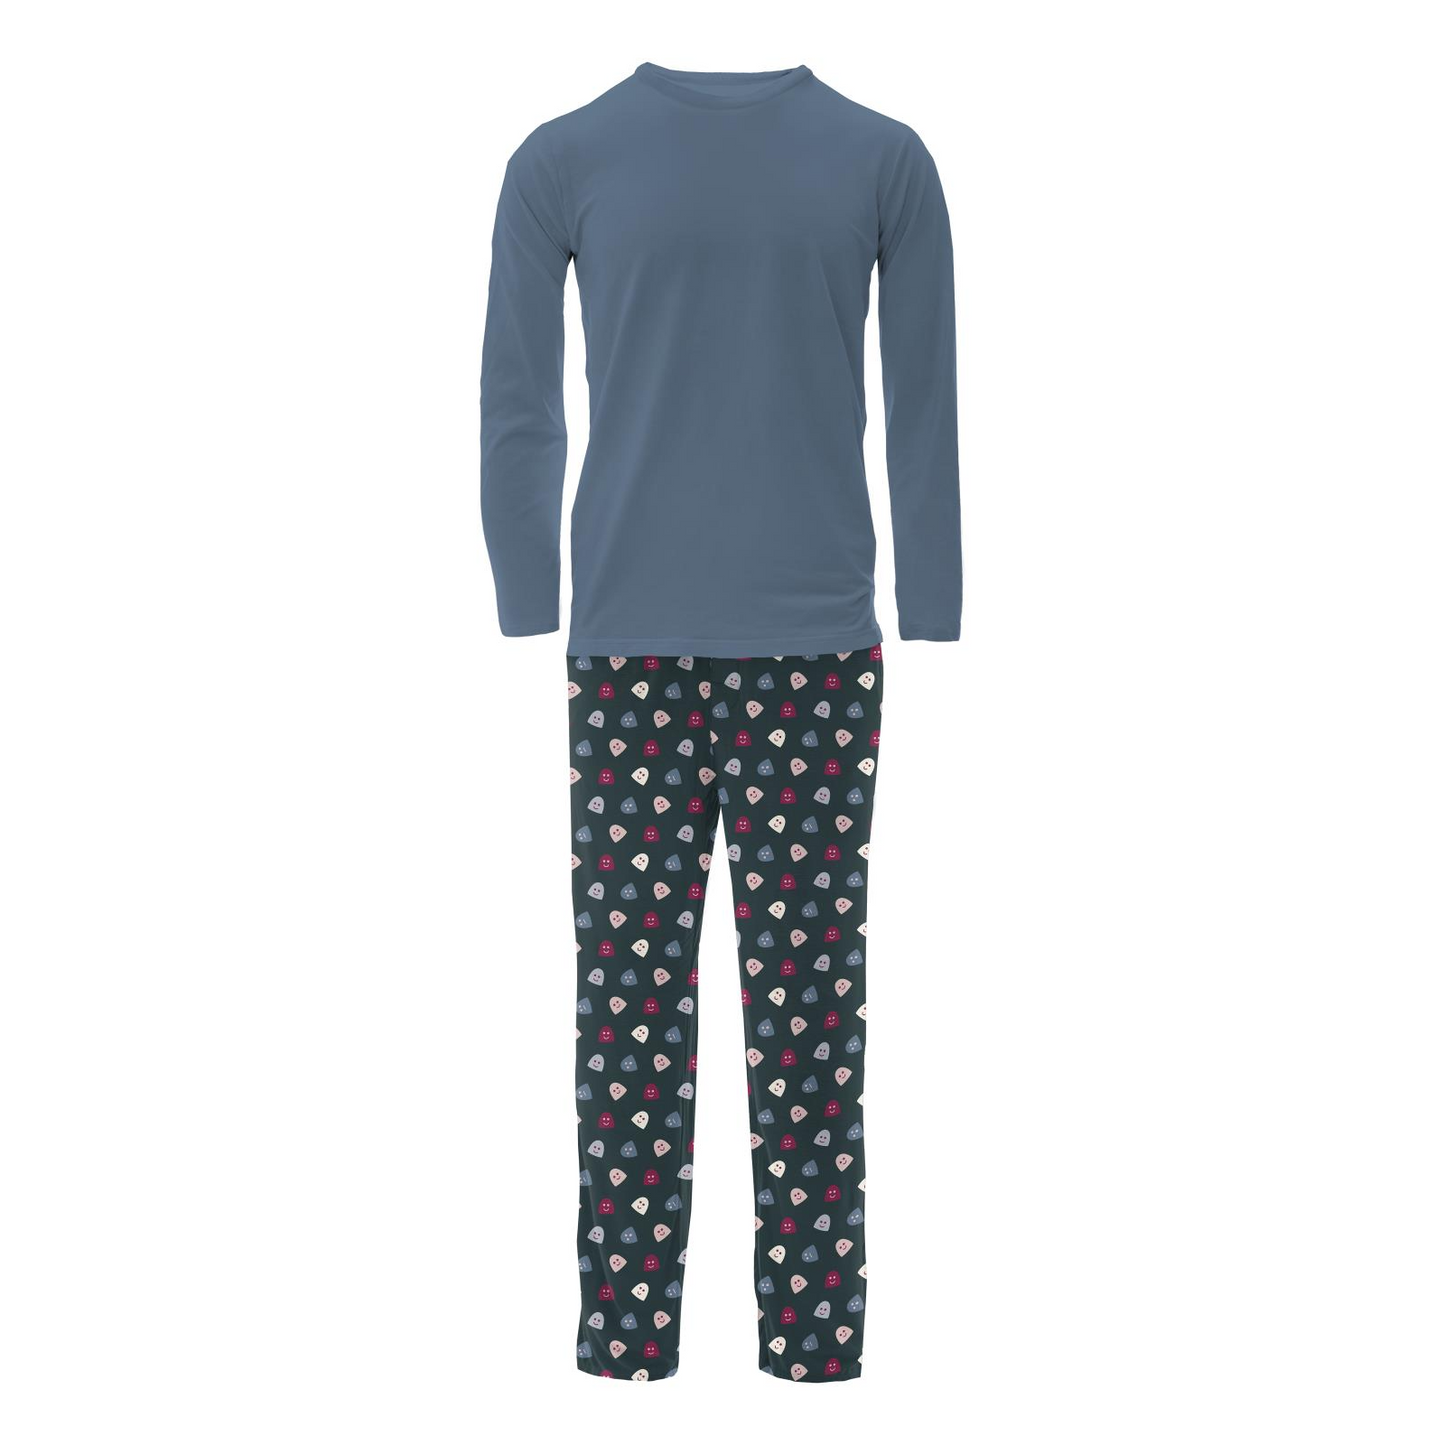 Kickee Pants Men's Print Long Sleeve Pajama Set: Pine Happy Ghosts/Pine Happy Gumdrops